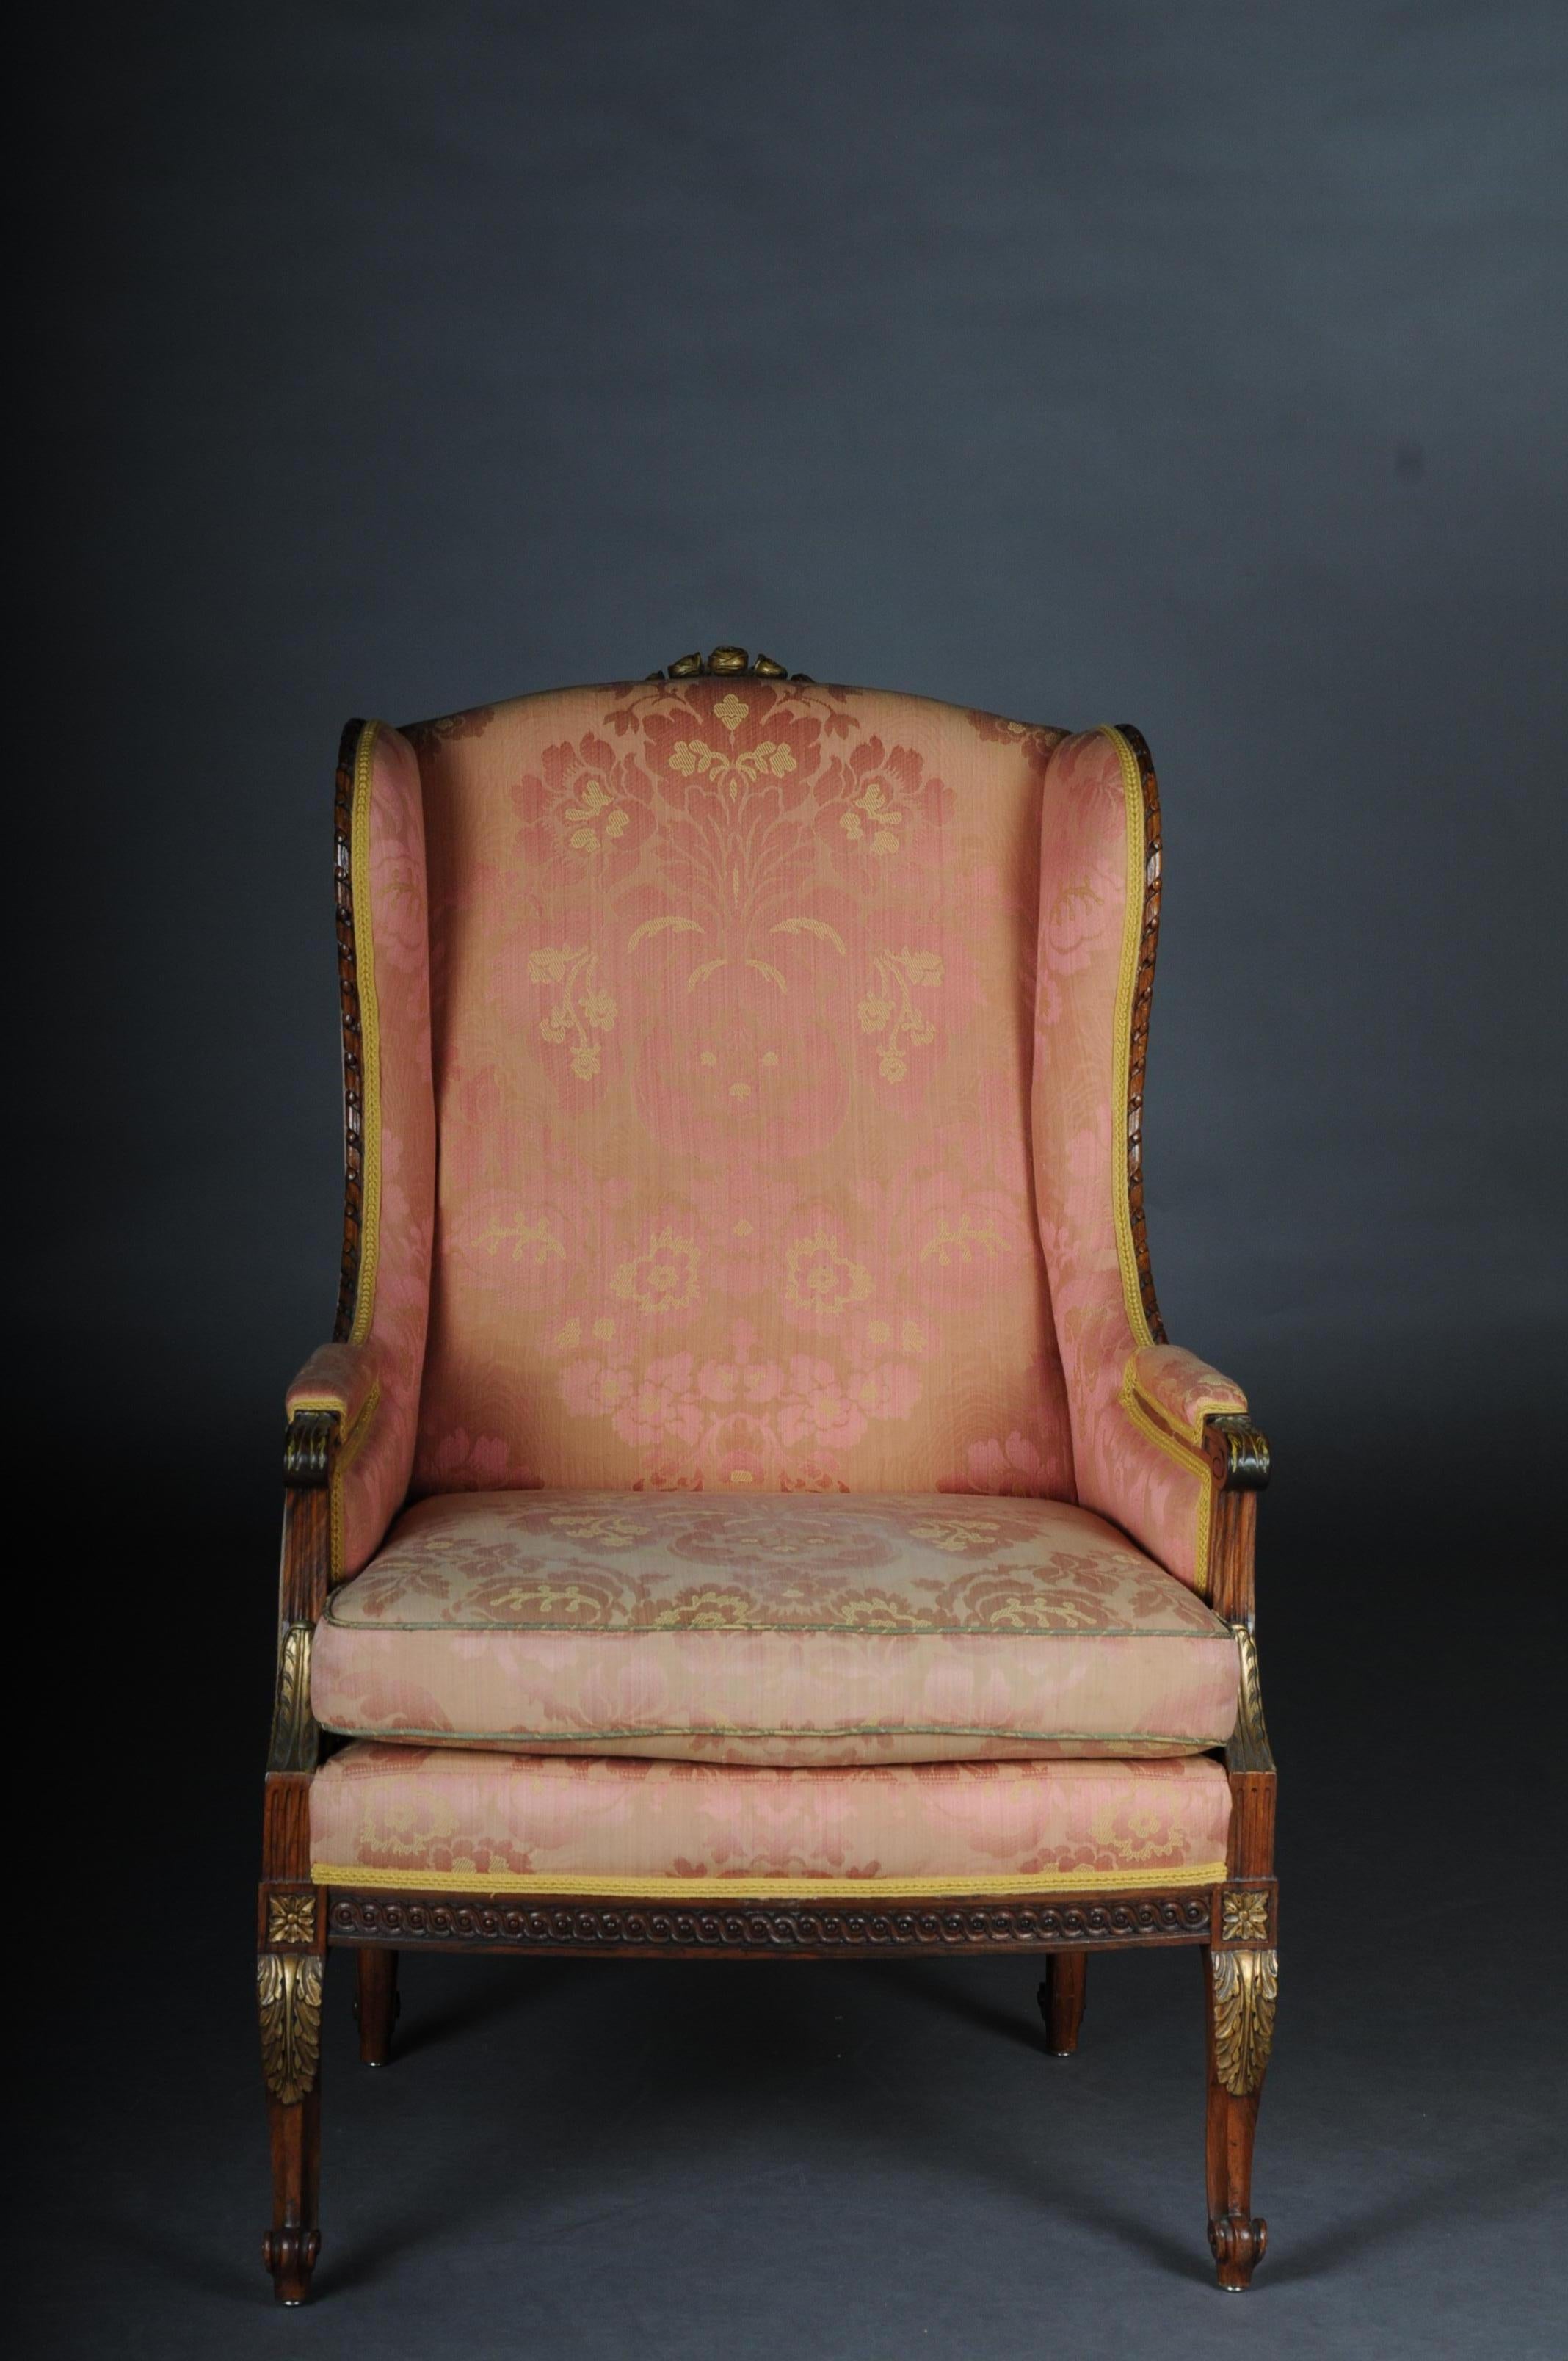 Französischer Sessel, gepolsterter Sessel, um 1900

Handgeschnitztes Massivholz, teilweise vergoldet. Klassische Polstermöbel. Gerader Rahmen auf lockigen Füßen. Sitz und Rückenlehne sind mit einer historischen Classic-Polsterung versehen.

(B -